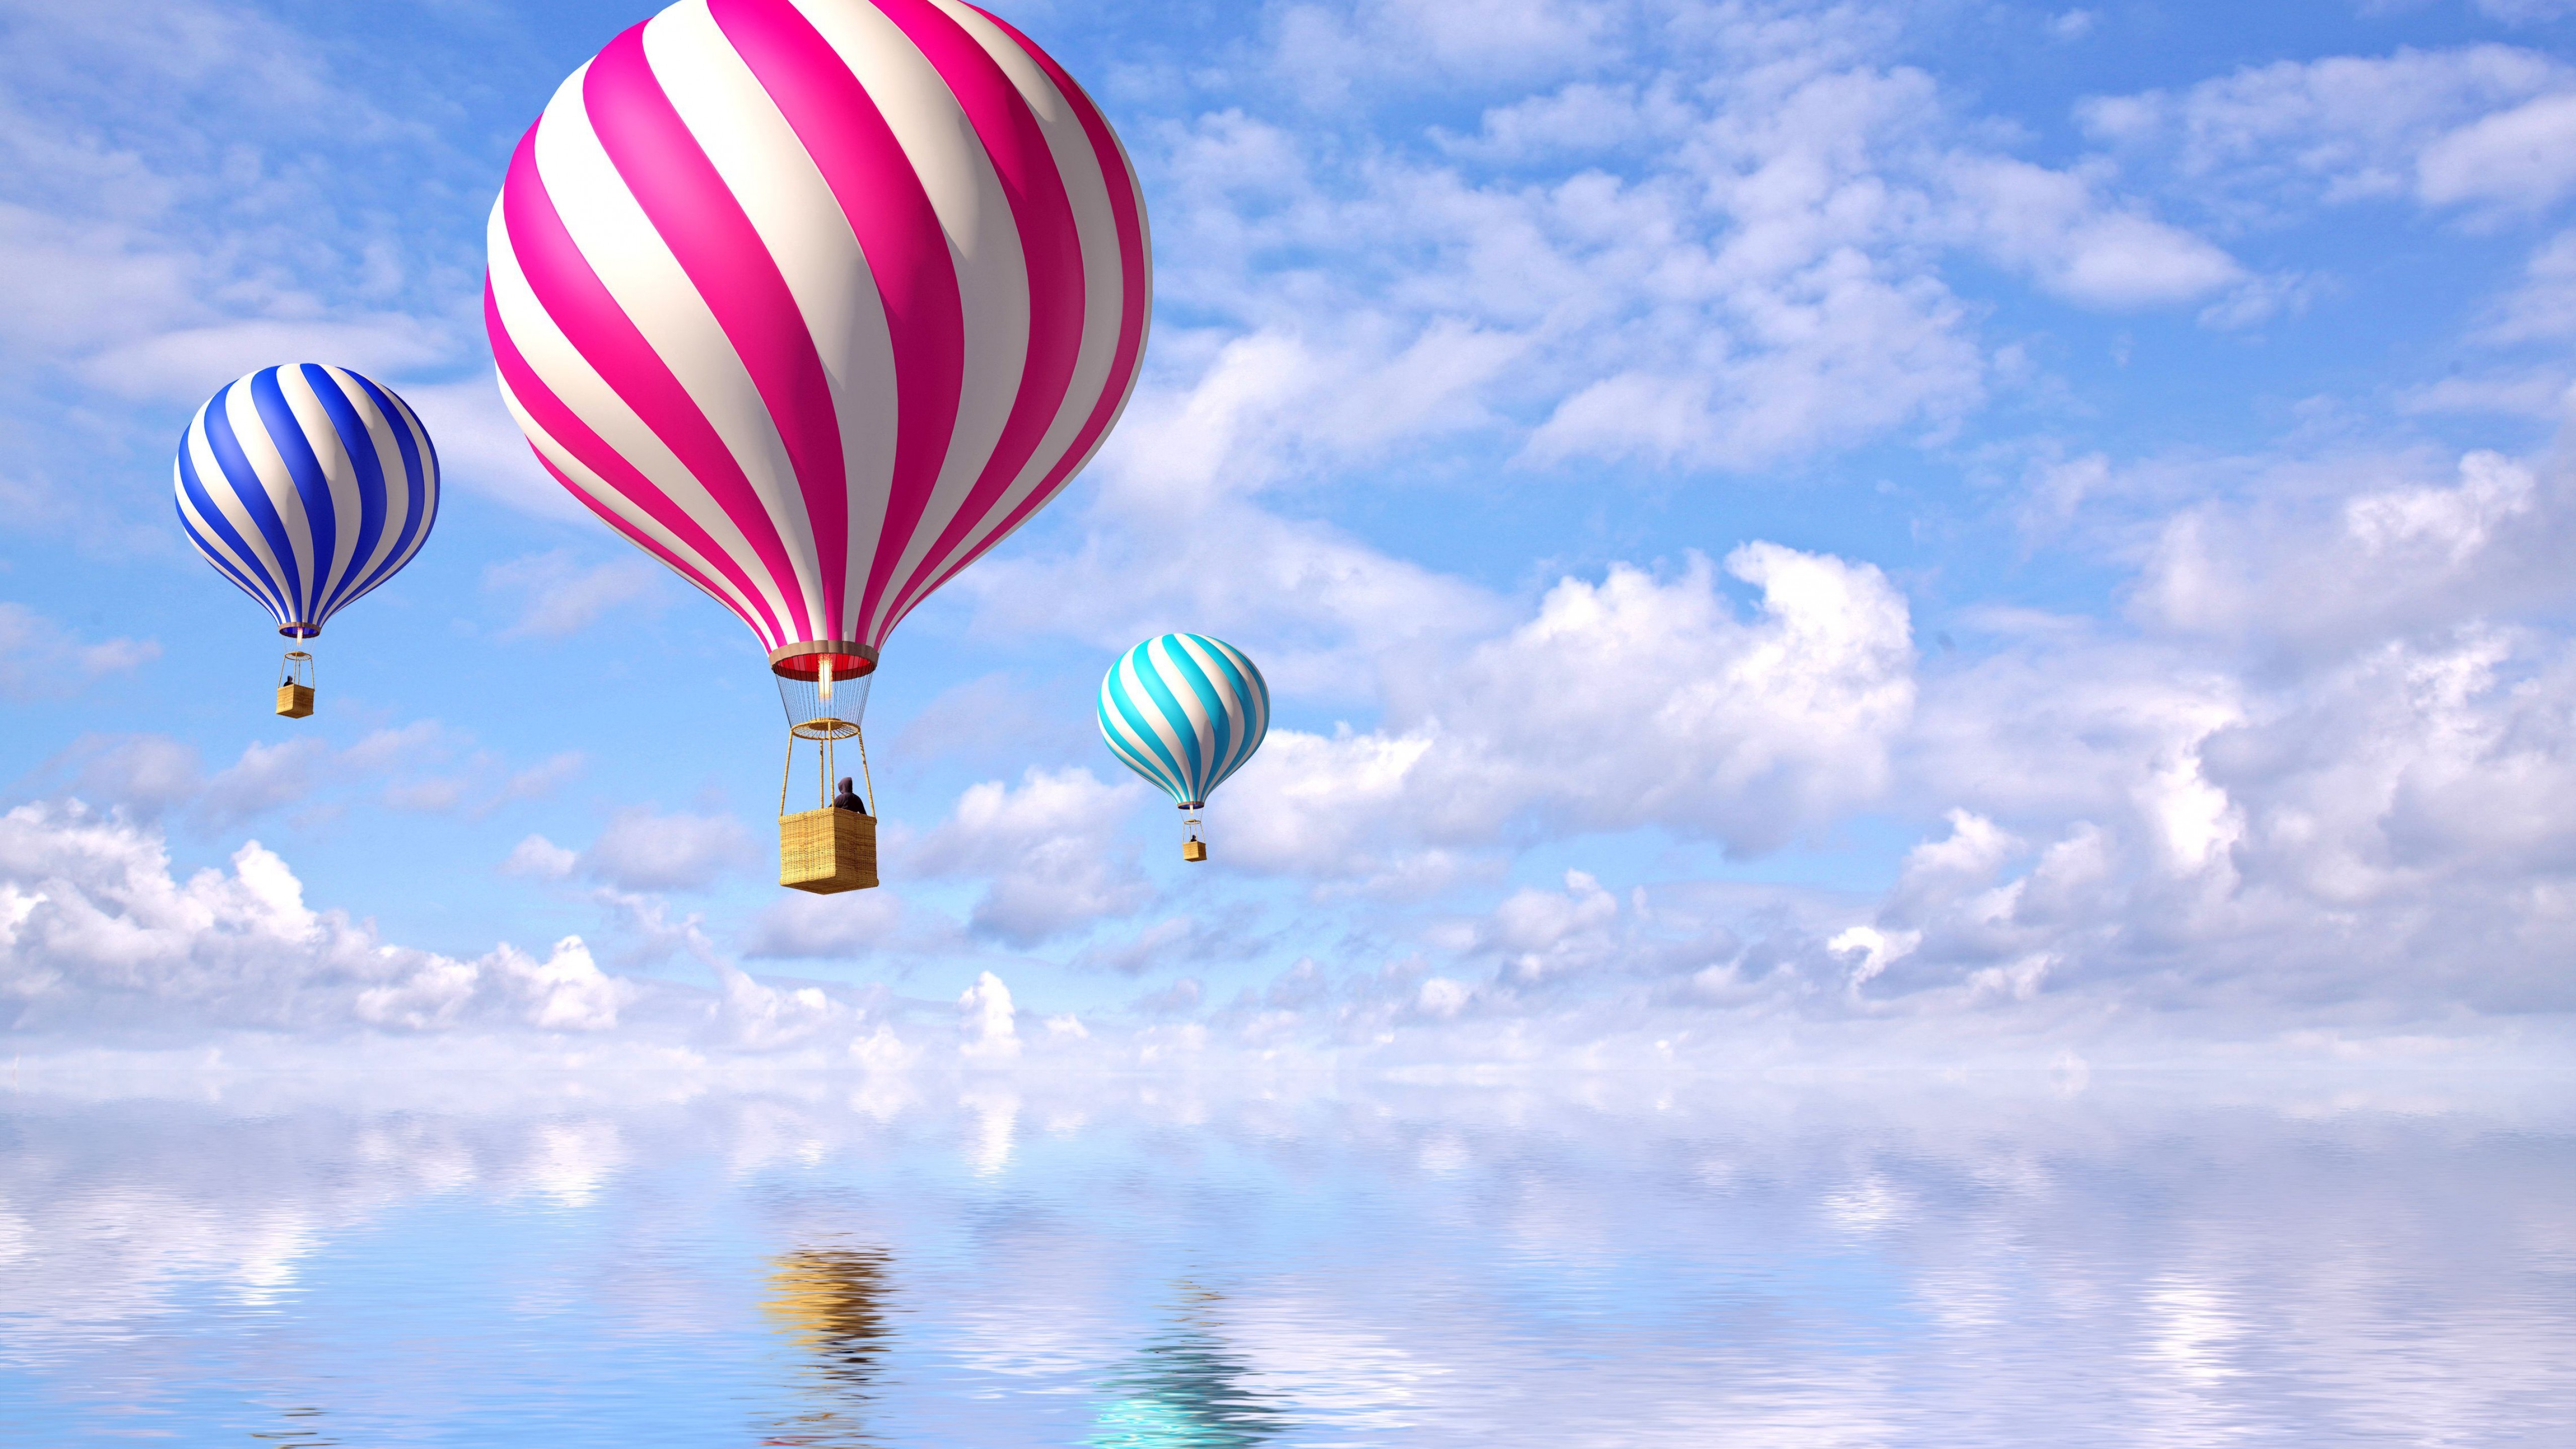 Photography / Hot Air Balloons Wallpaper , HD Wallpaper & Backgrounds